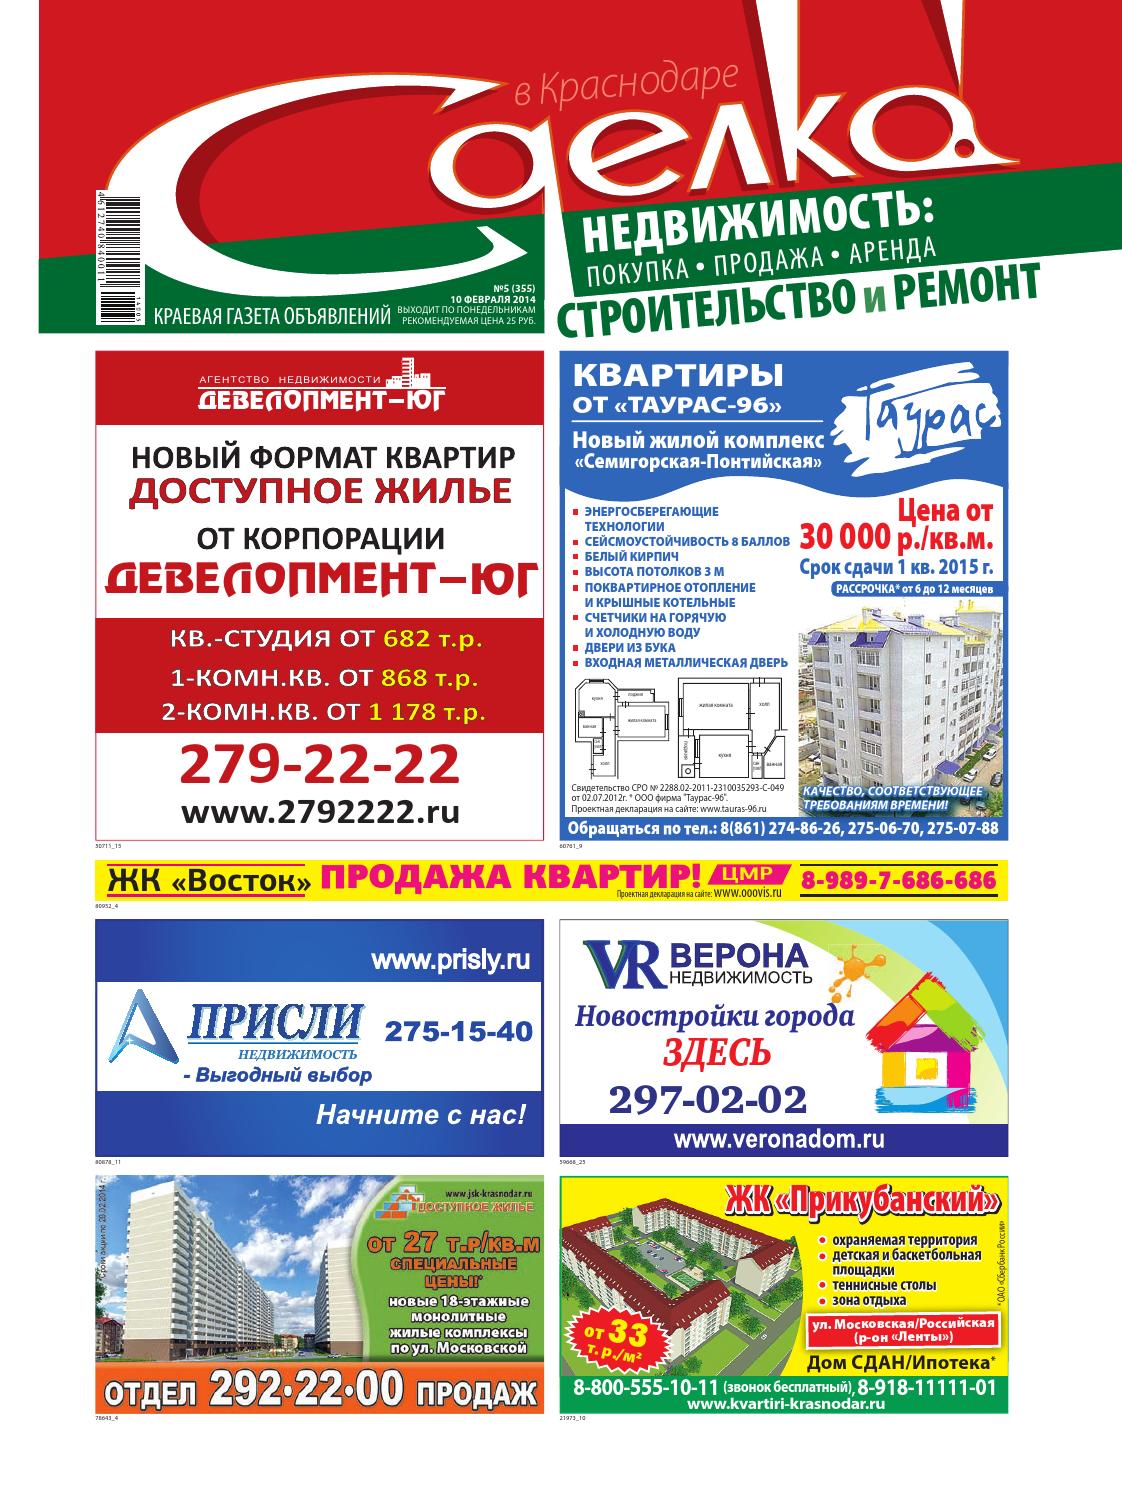 Сделка в Краснодаре №355, февраль 2014